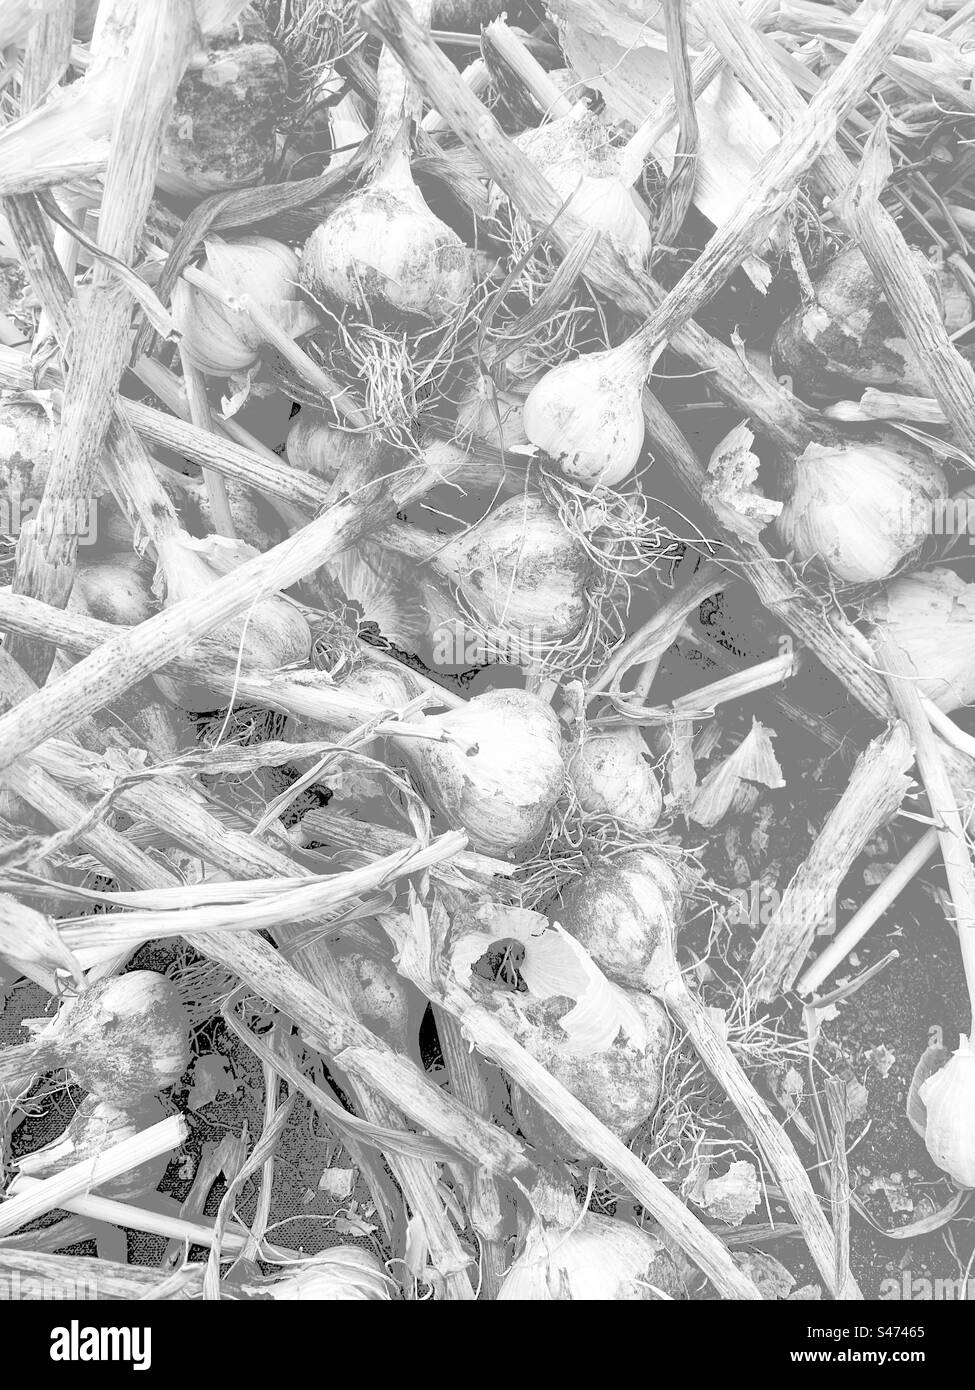 Verblasste Ansicht frischer Knoblauchpflanzen in schwarz-weiß-monochrom. Stockfoto